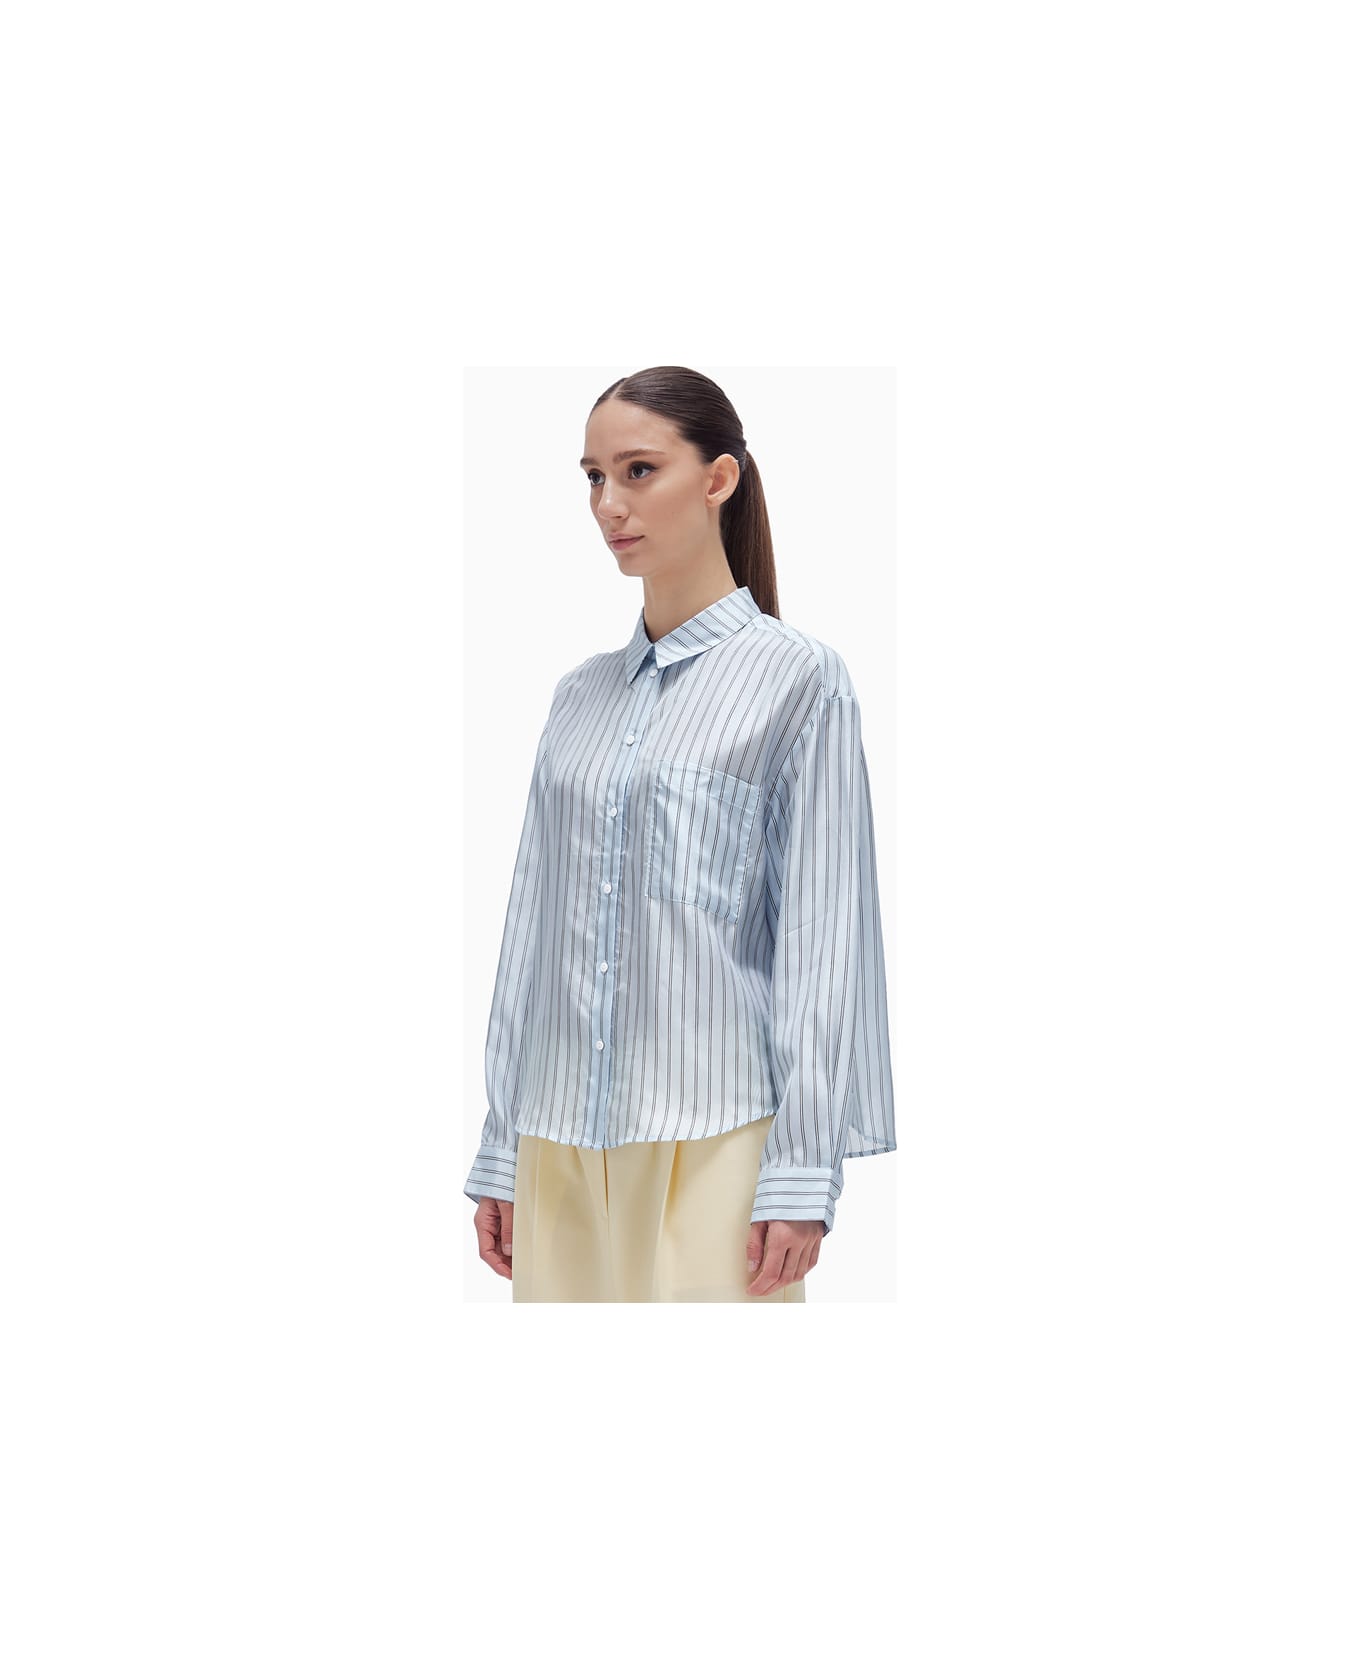 Herskind River Shirt - Light Blue Stripe